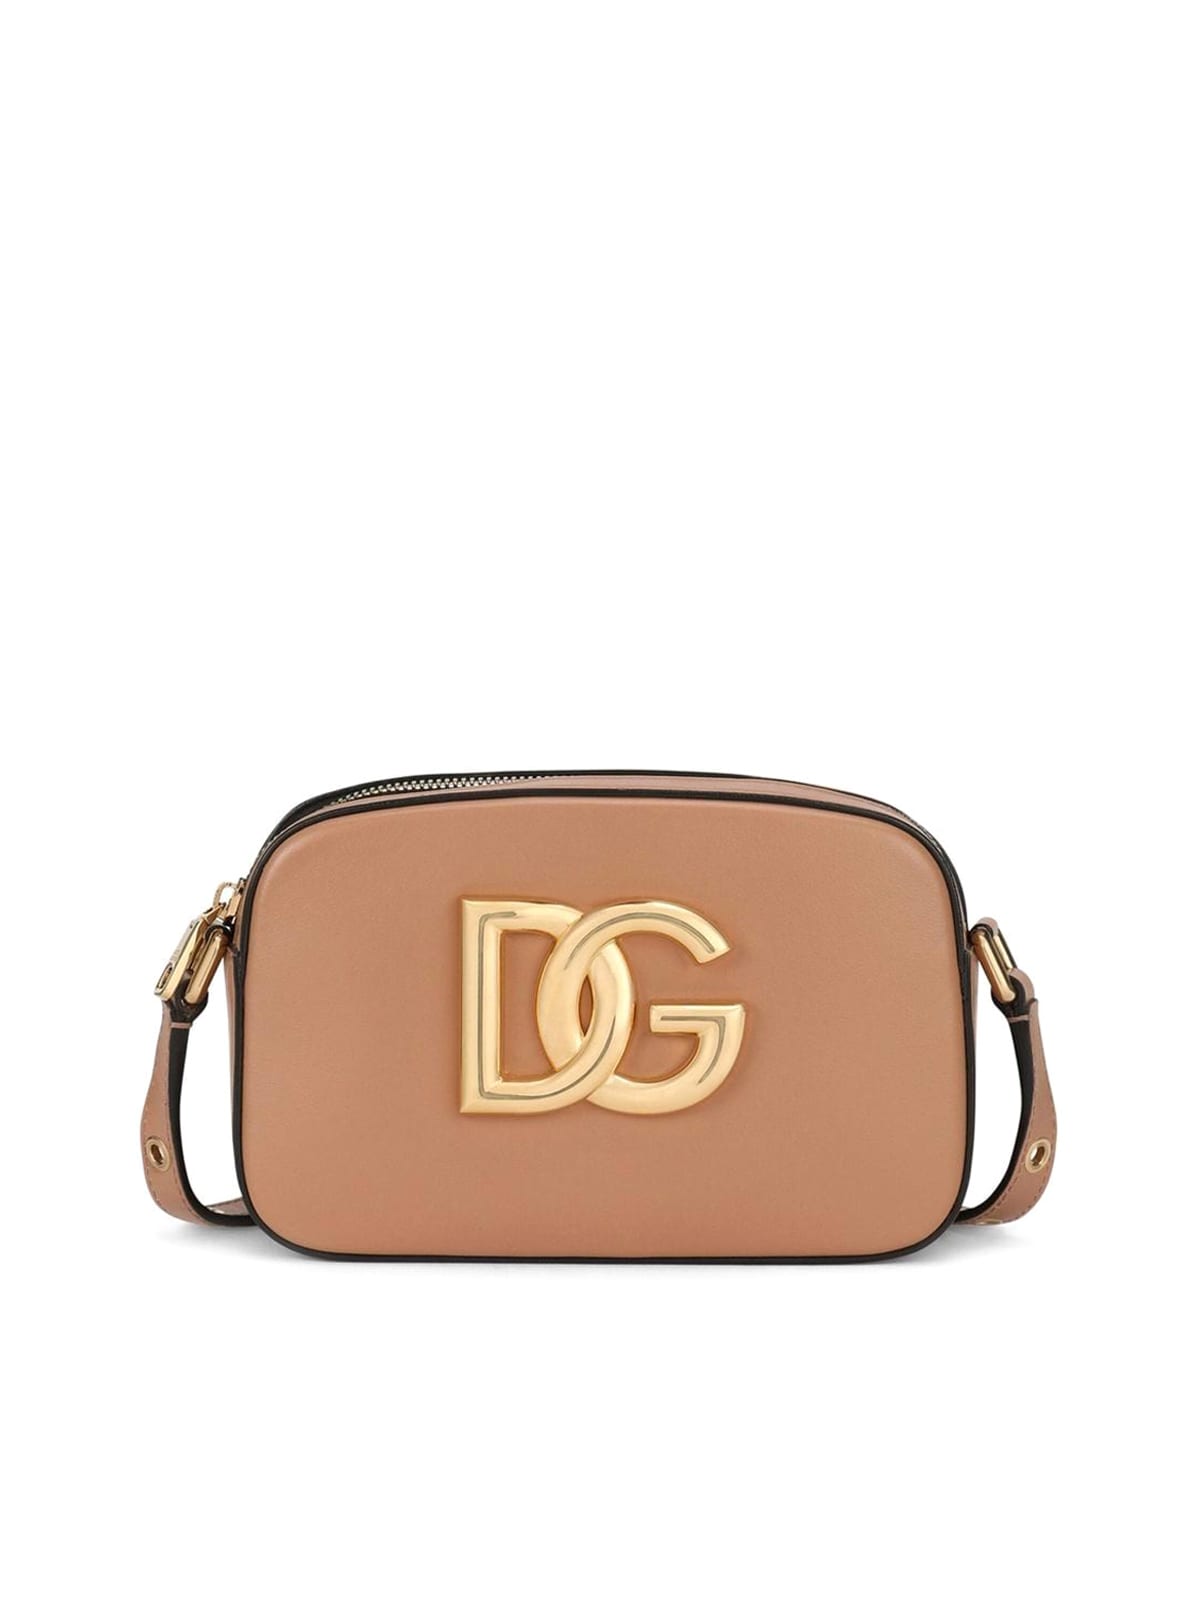 Dolce & Gabbana Dg Shoulder